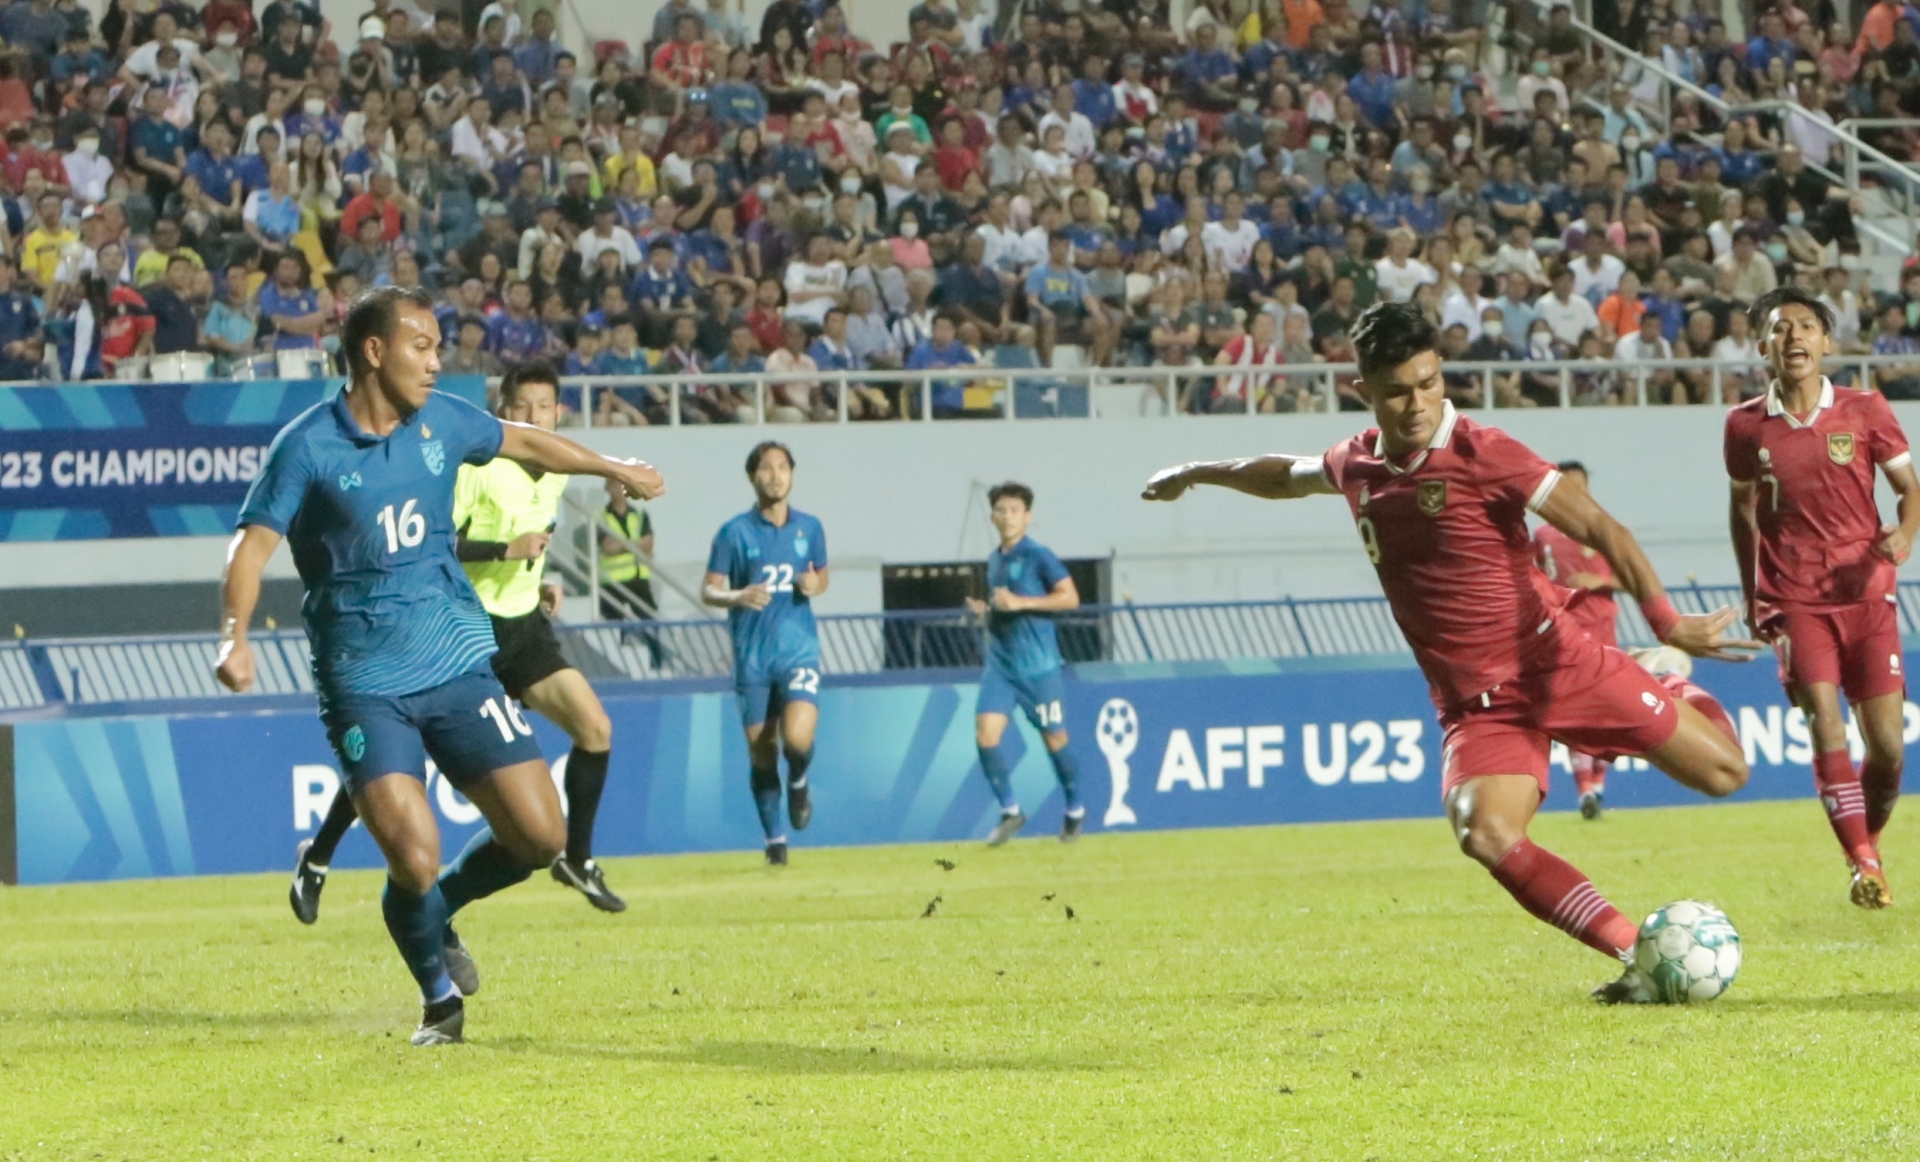 Trực tiếp U23 Thái Lan 1-3 U23 Indonesia: Đốt lưới nhà 317793